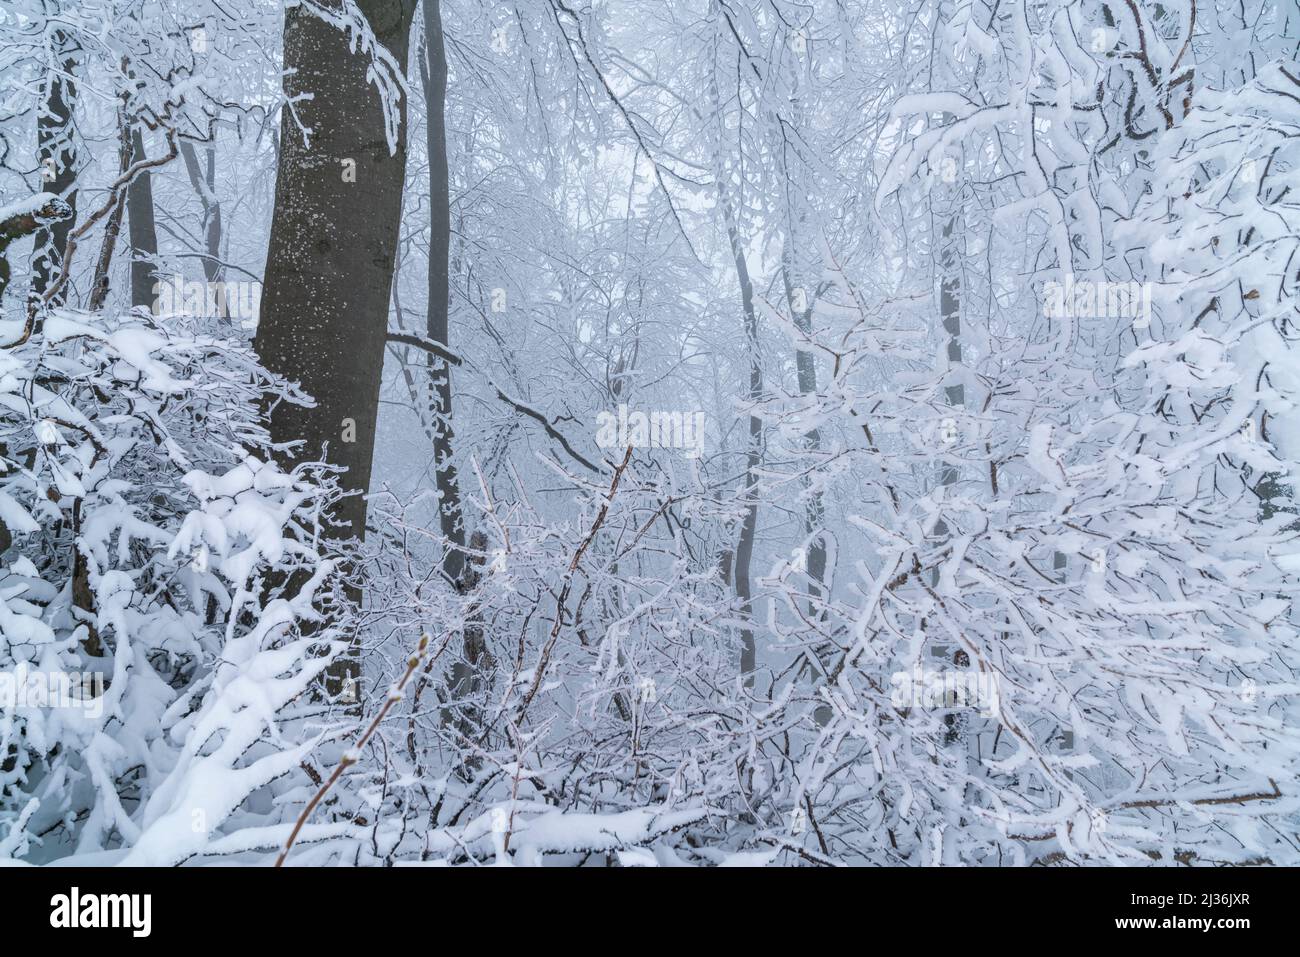 Alemania, paisaje invernal en un bosque de la selva, árboles y ramas cubiertas de nieve blanca y hielo en un frío día de invierno congelado, una maravilla blanca Foto de stock